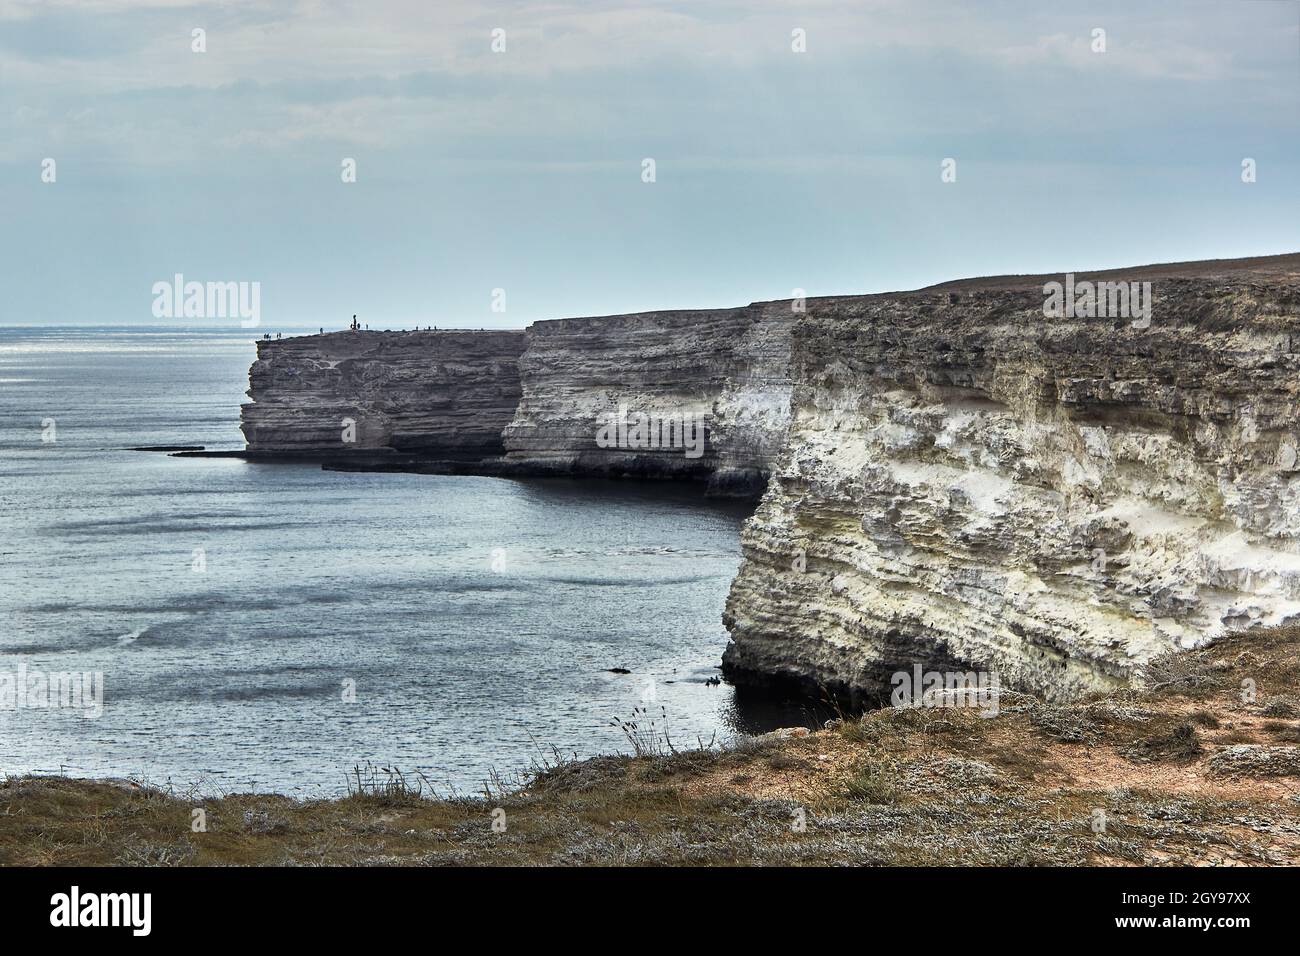 Kap am Meer. Seeseite, Horizont, ruhiges blaues Meer. Kreidefelsen, Kap Tarkhankut, Krim. Die natürliche Textur des weißen Steins. Schlechtes Wetter. Stockfoto